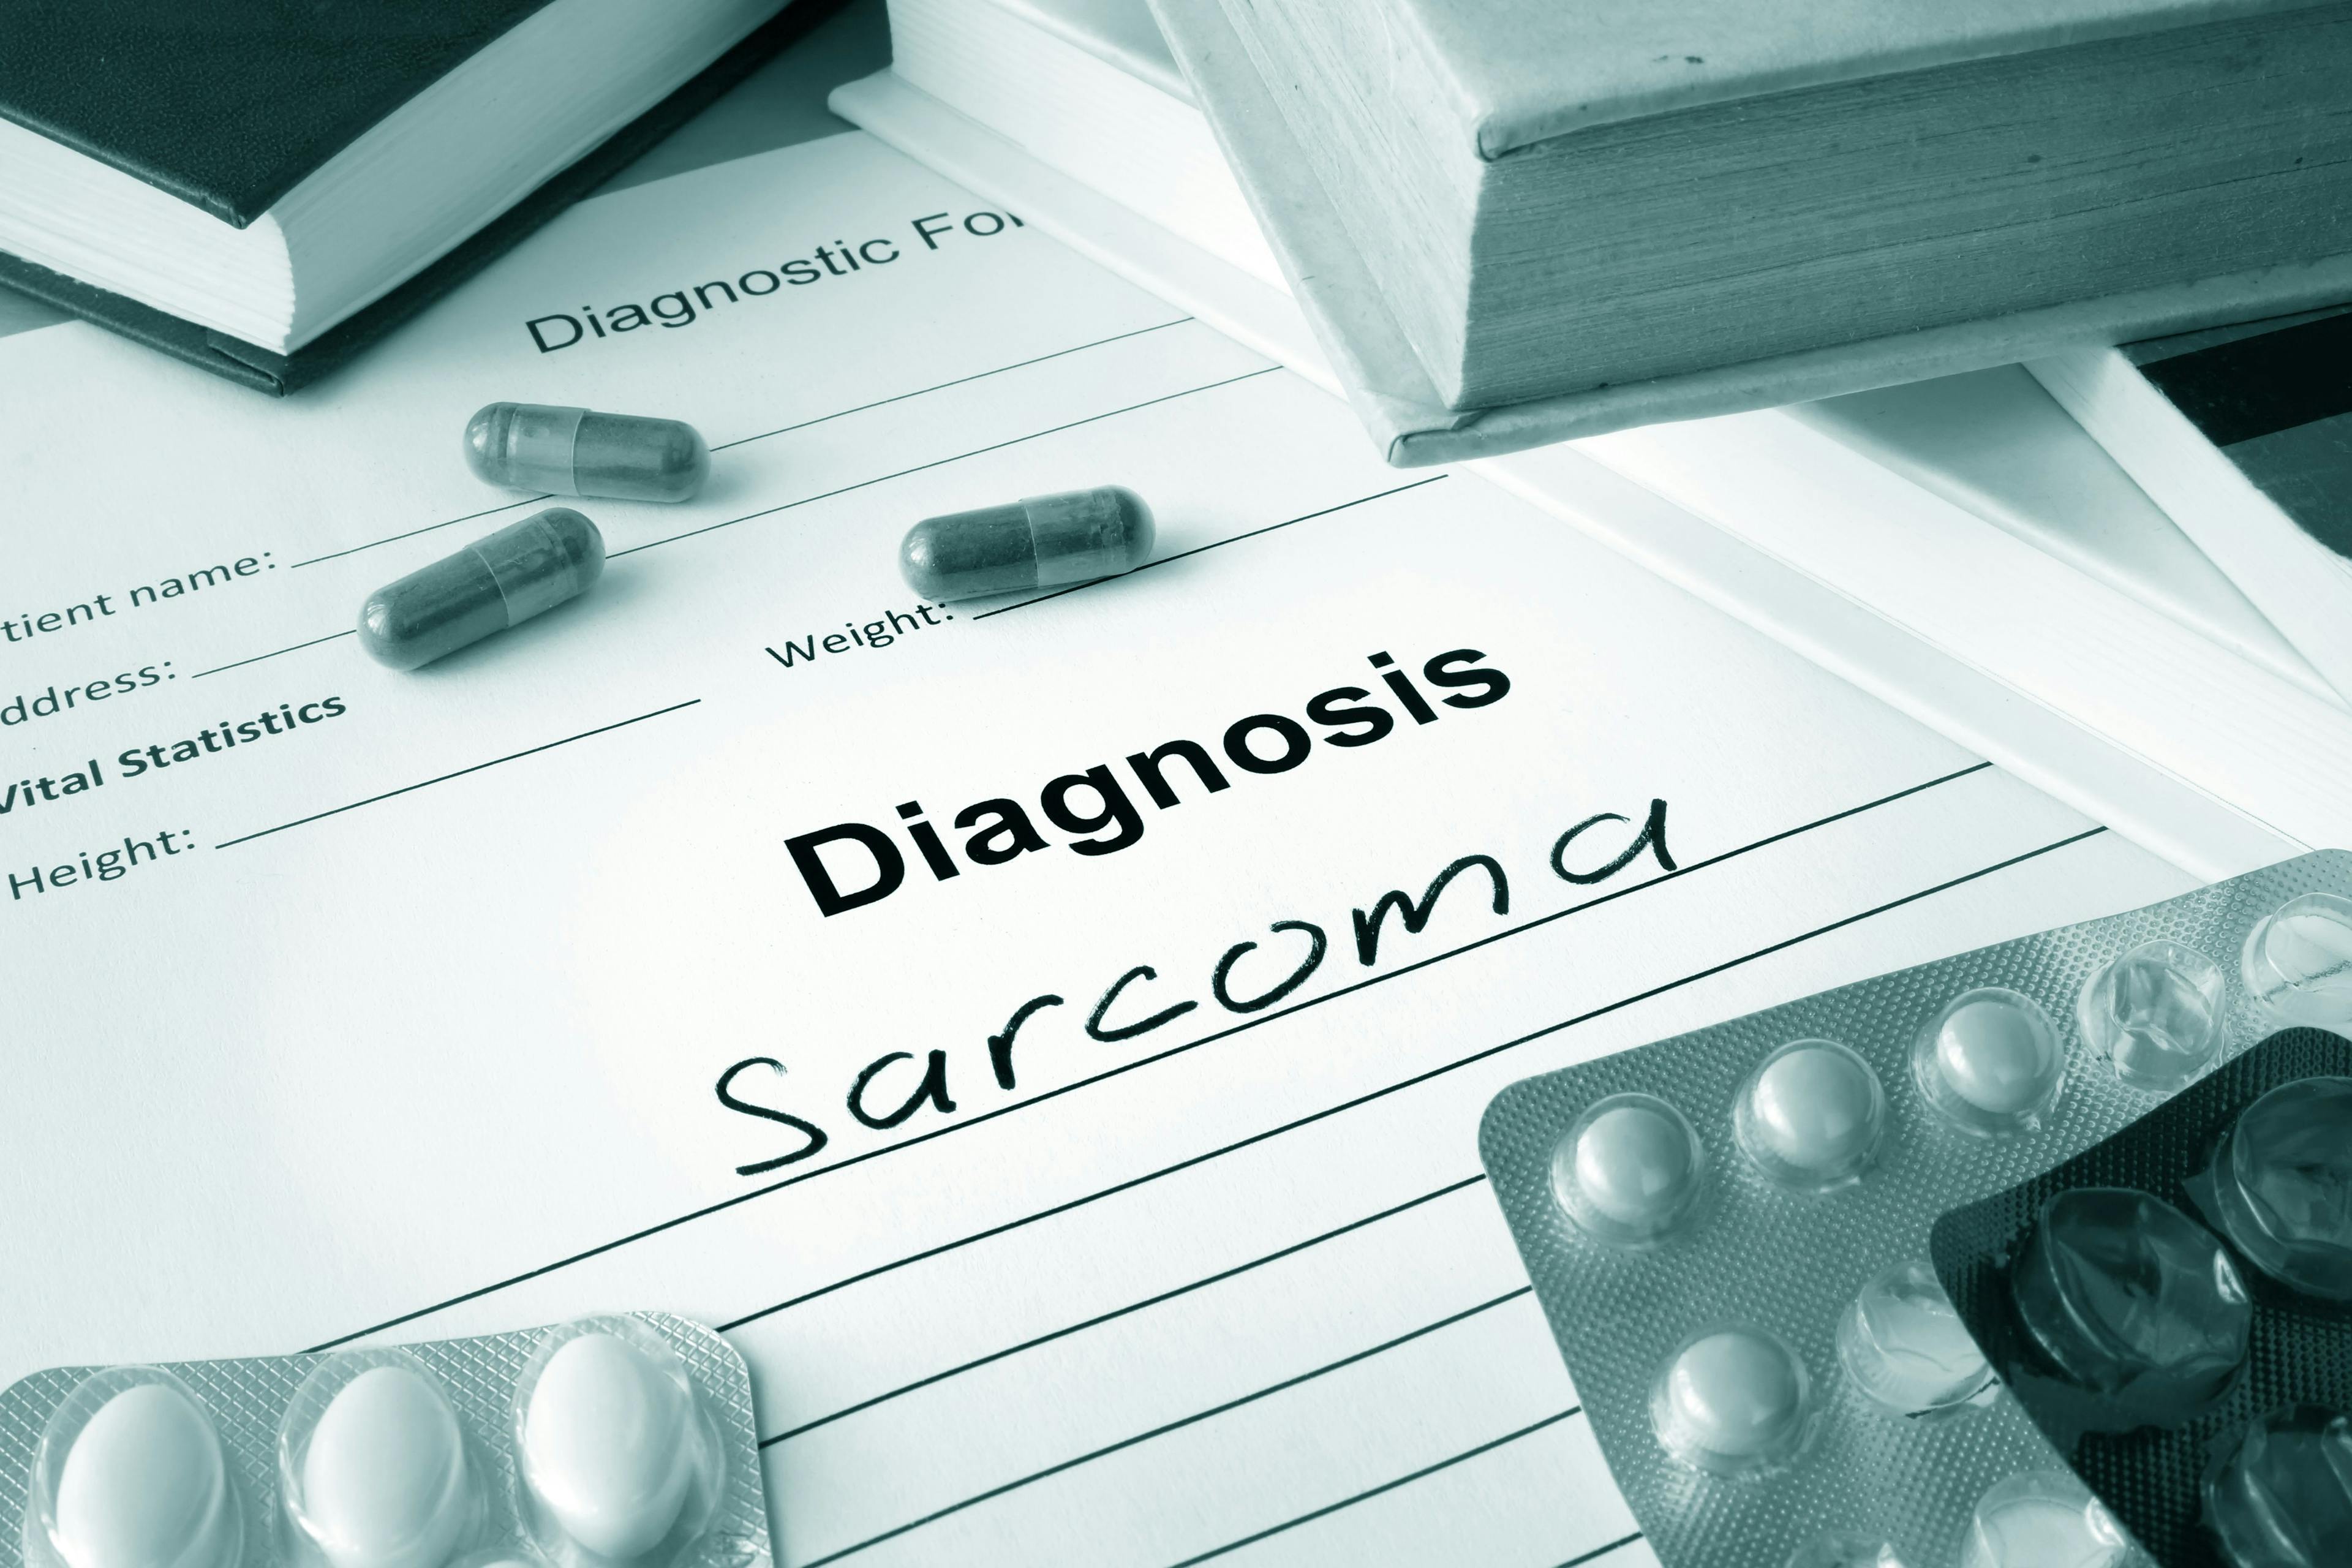 sarcoma diagnosis